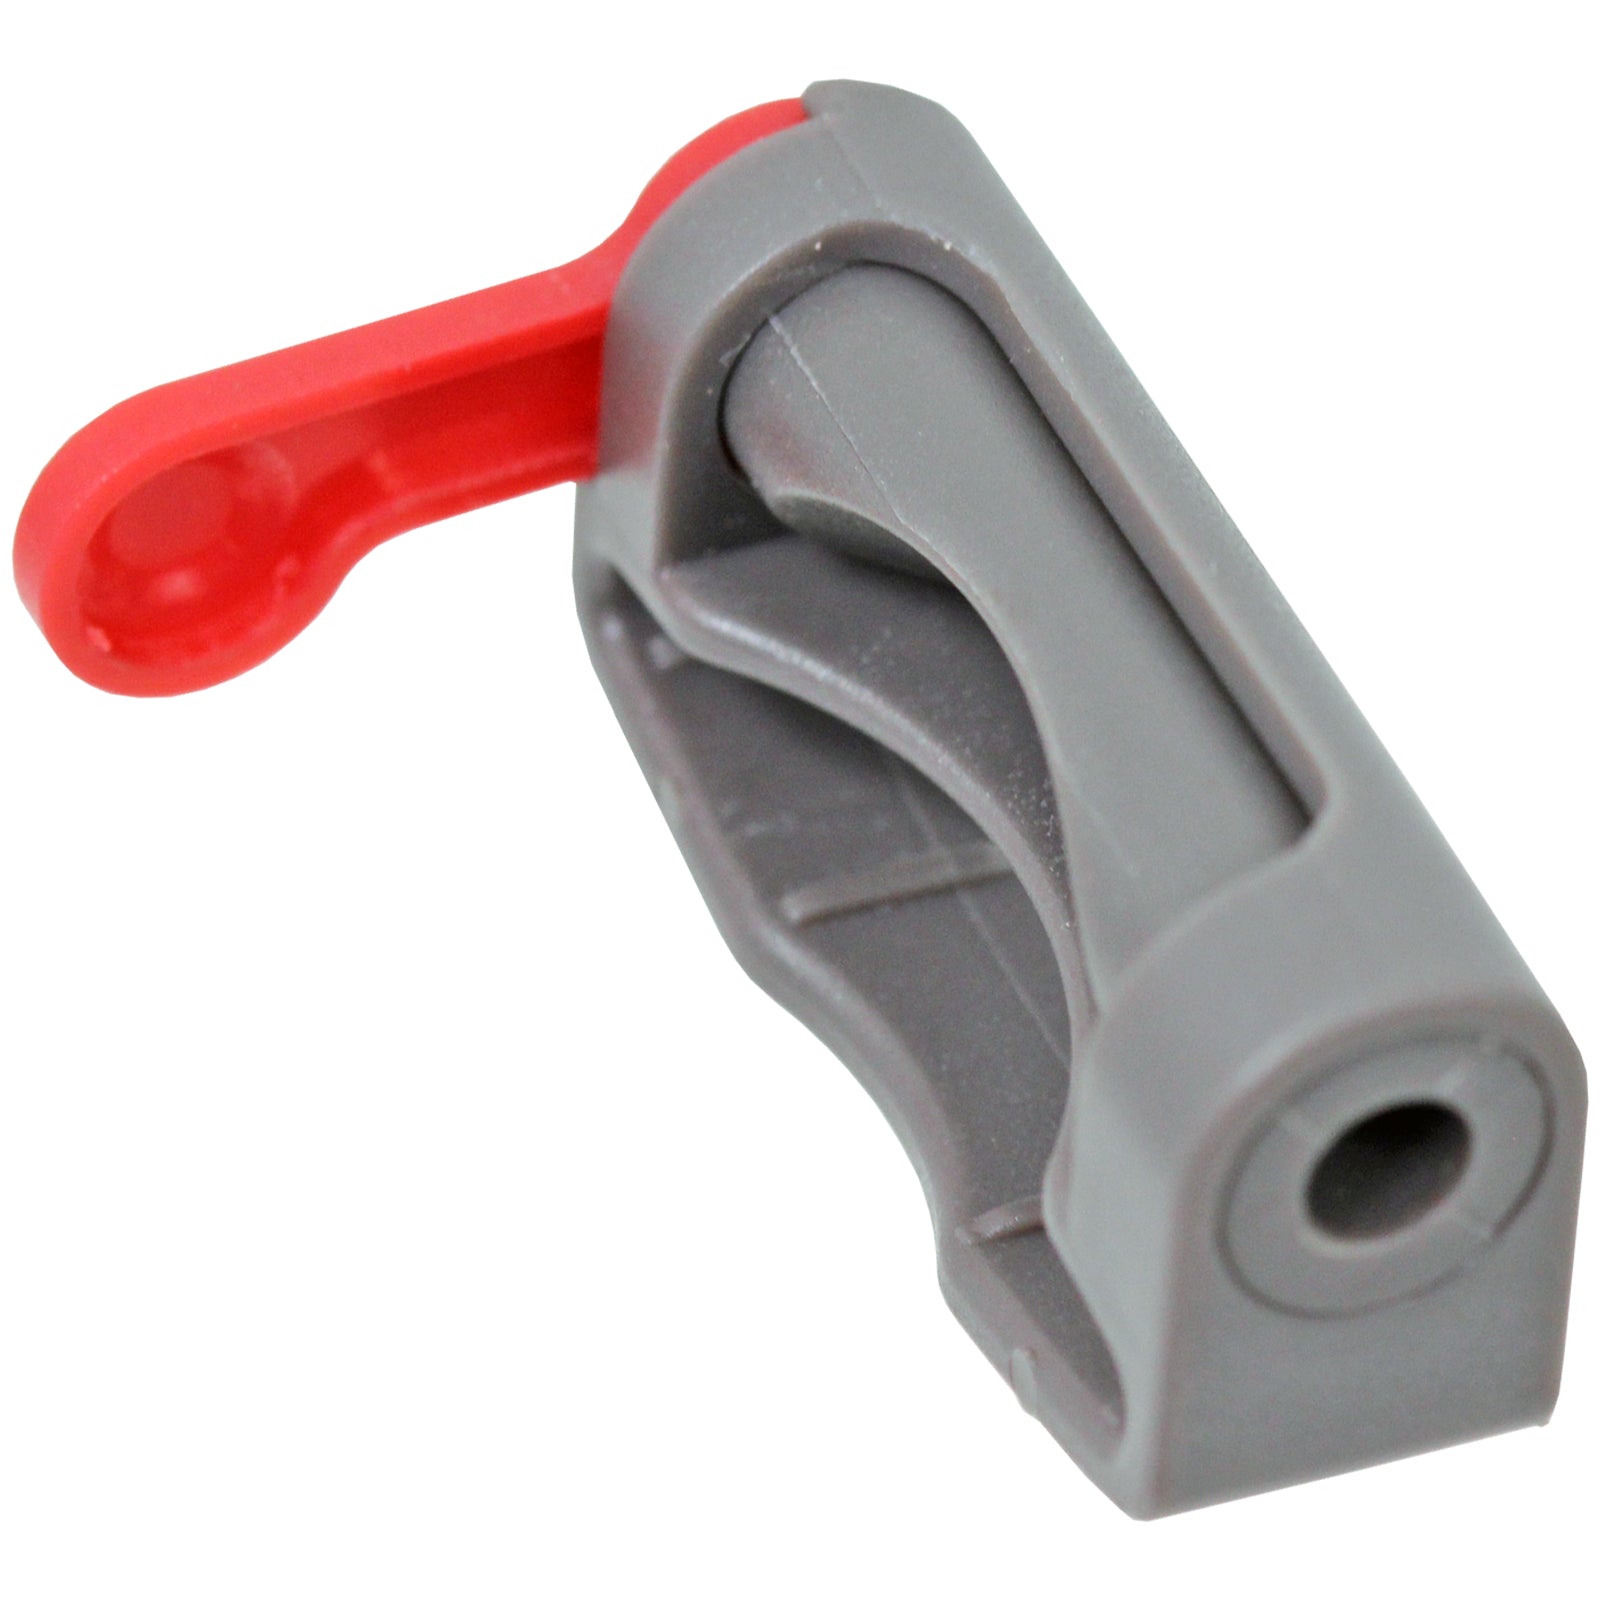 Trigger Lock for DYSON V8 SV10 Vacuum Cleaner Cordless Power Holder Button